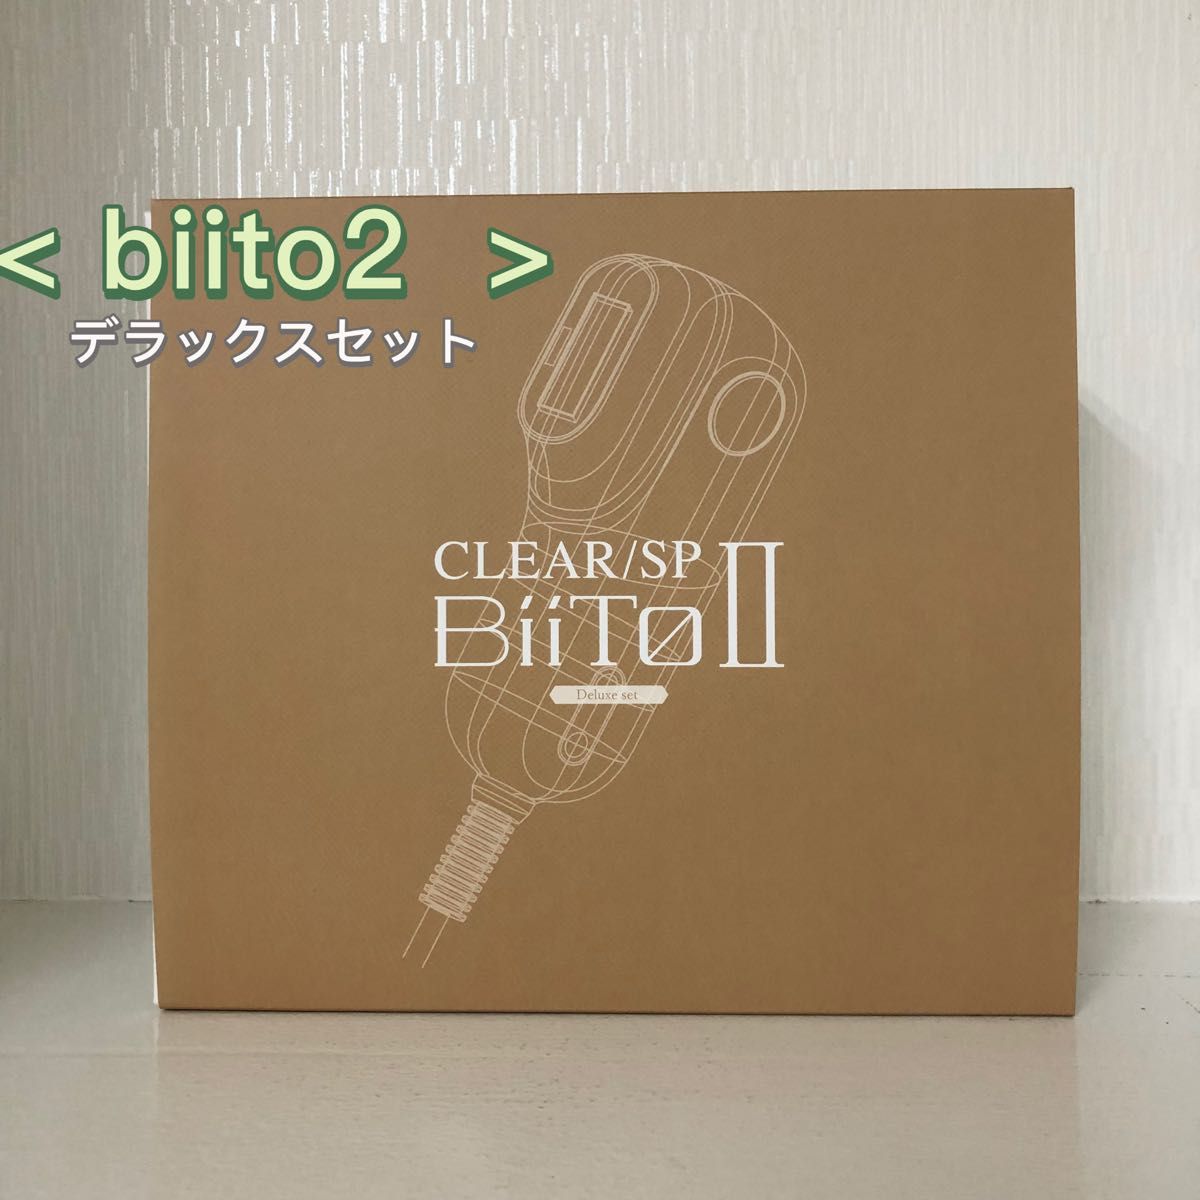 <新品> Biito2 デラックスセット 光総合美容機 ビートツー DXセット